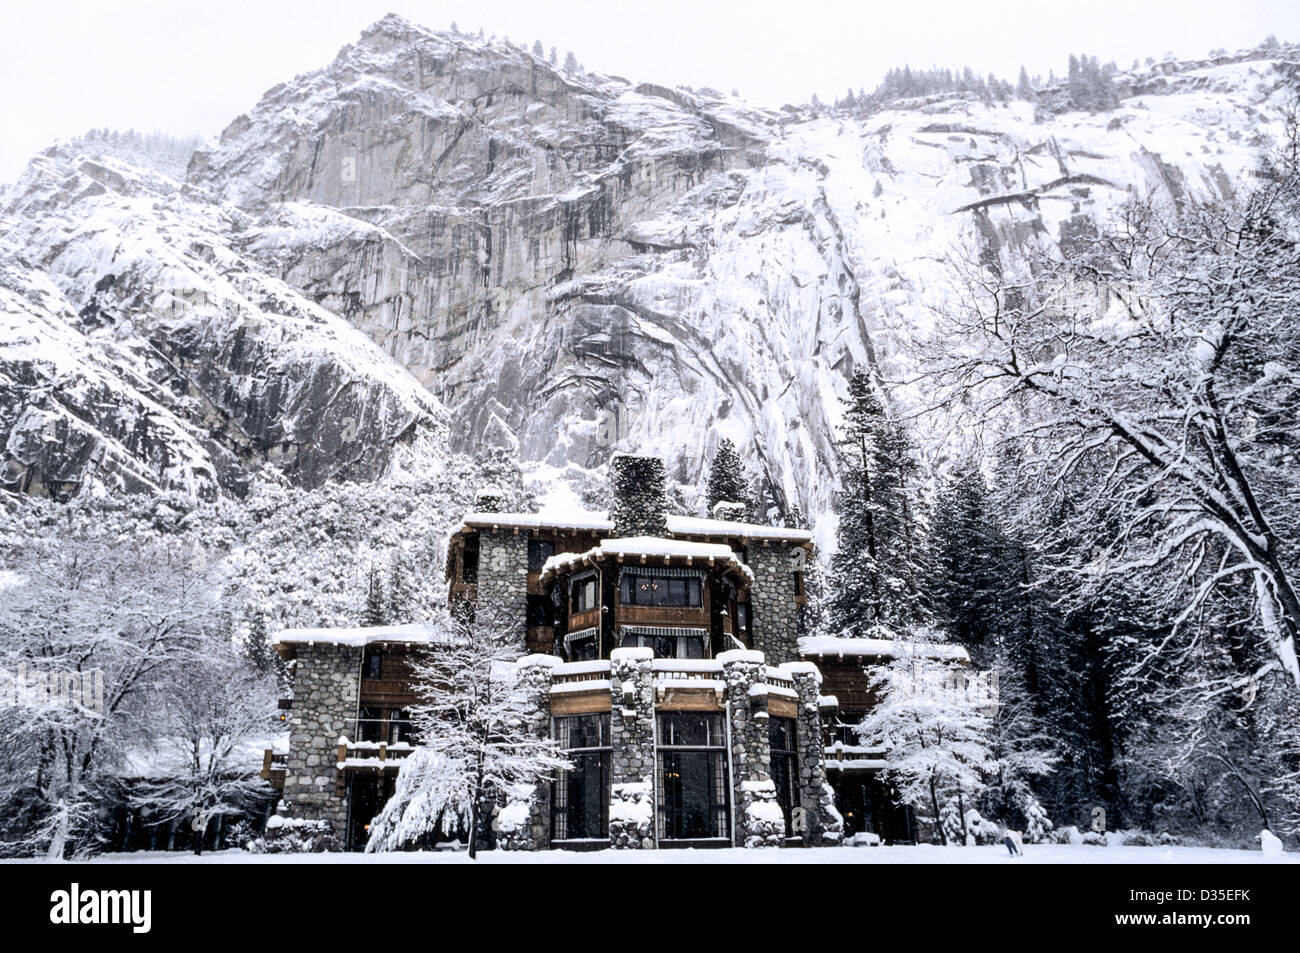 L'hôtel Ahwahnee, qui fait face à la pierre, se fond dans cette scène hivernale enneigée du parc national montagneux de Yosemite, en Californie, aux États-Unis. Banque D'Images